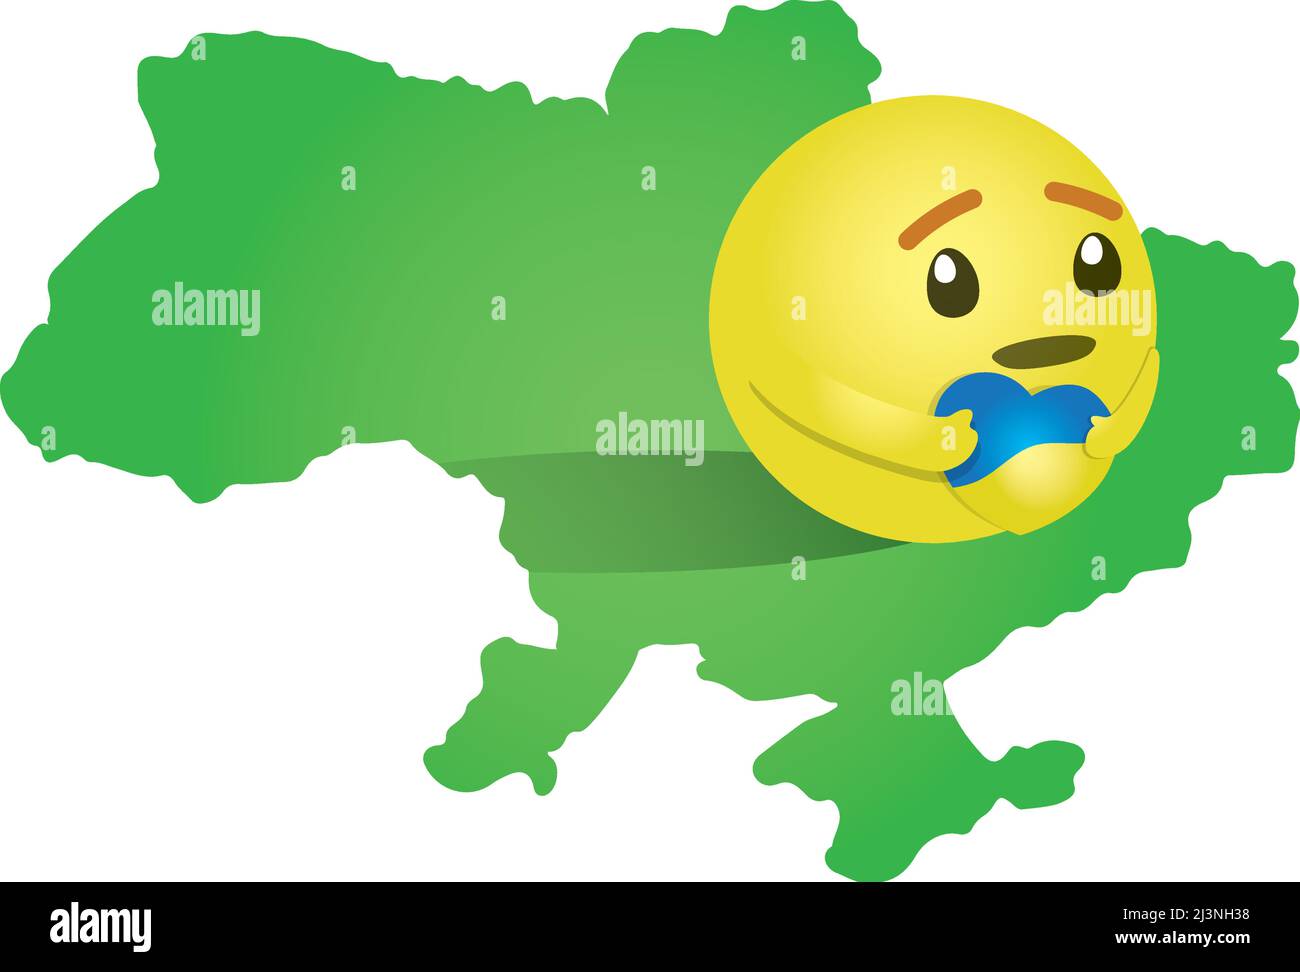 Stop war in ukraine - hug reaction on Ukraine map Stock Vector